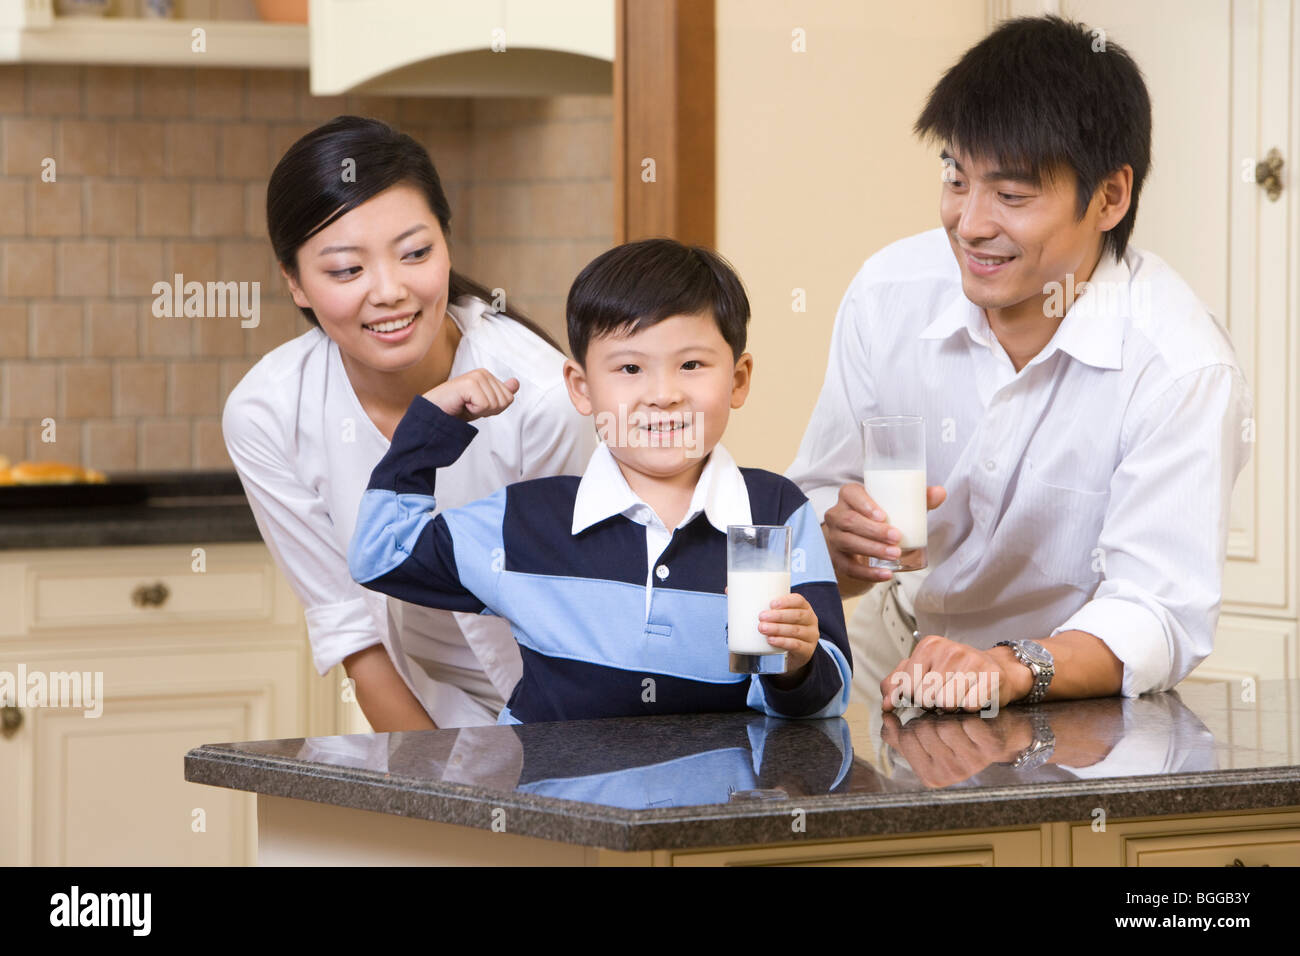 A family of three drinking milk Stock Photo